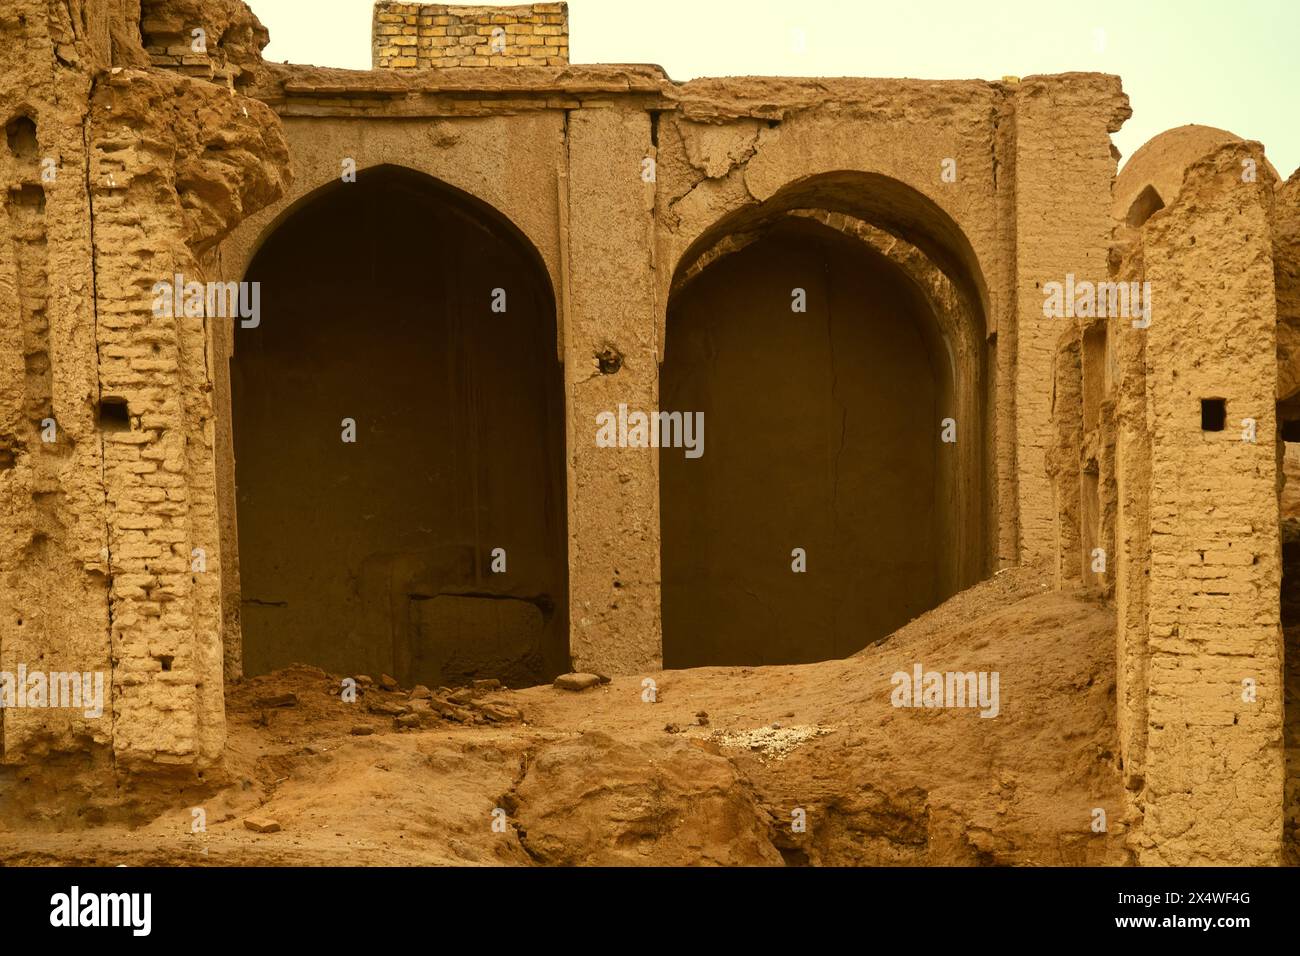 Yazd, Iran - 28 décembre 2022 : Architecture orientale. Un vieux bâtiment, une ville médiévale, des bâtiments en briques d'adobe se sont effondrés Banque D'Images